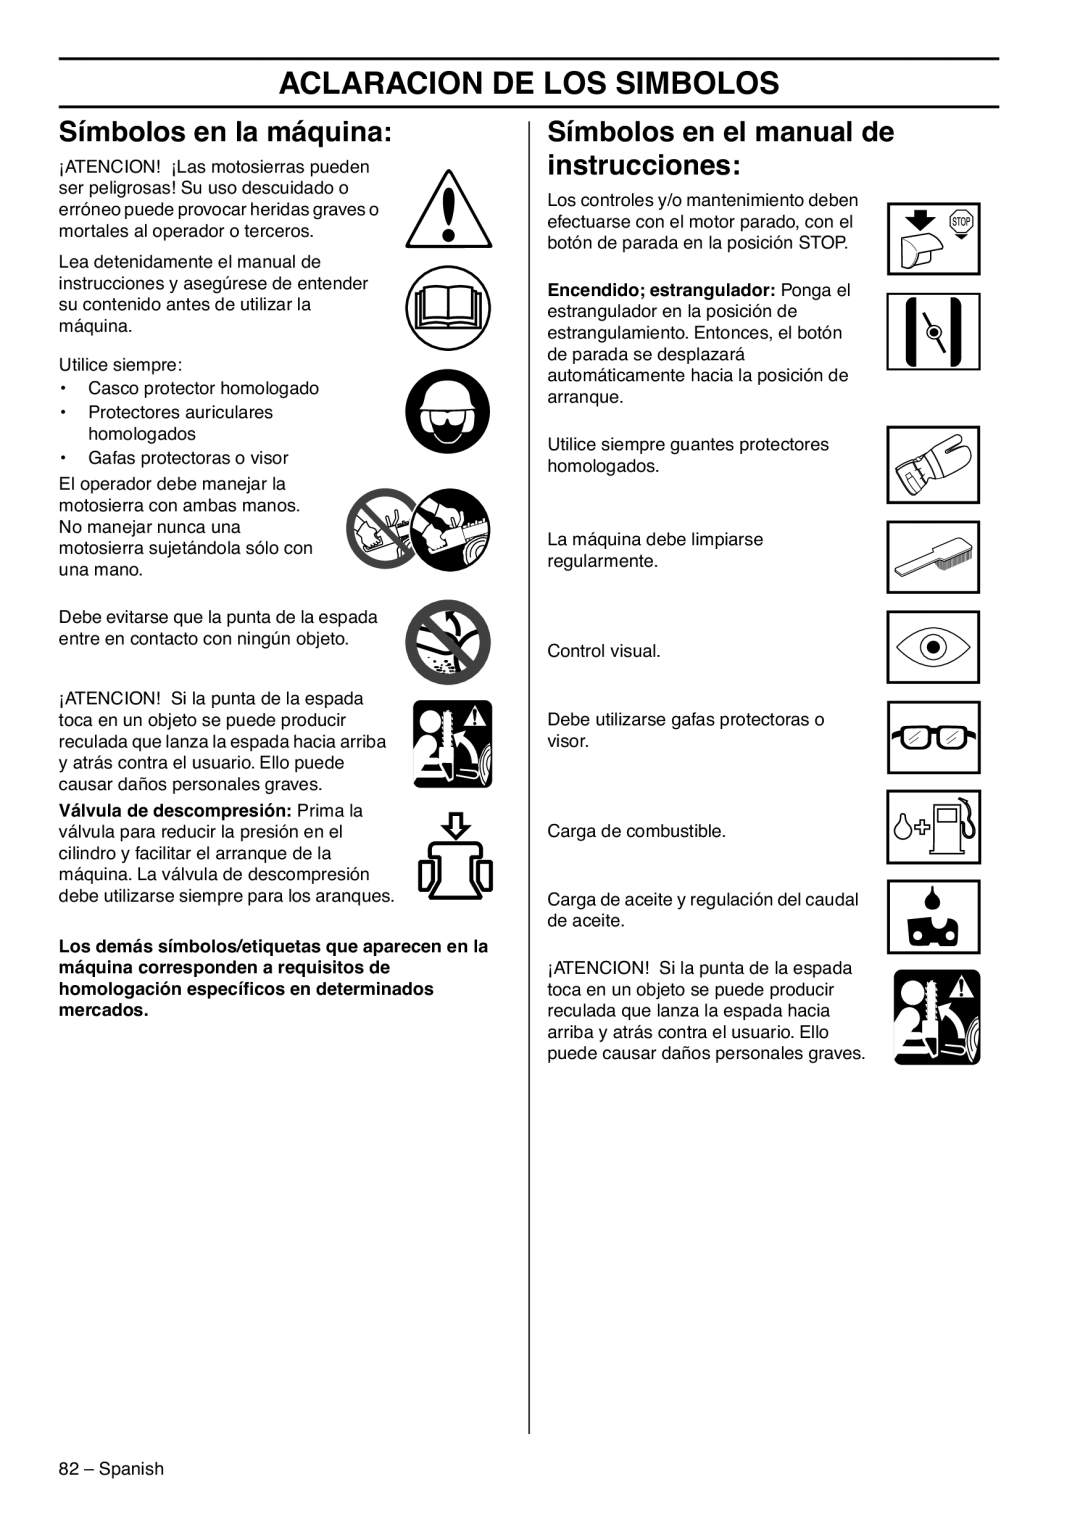 RedMax GZ7000 Aclaracion De Los Simbolos, Símbolos en la máquina, Símbolos en el manual de instrucciones 